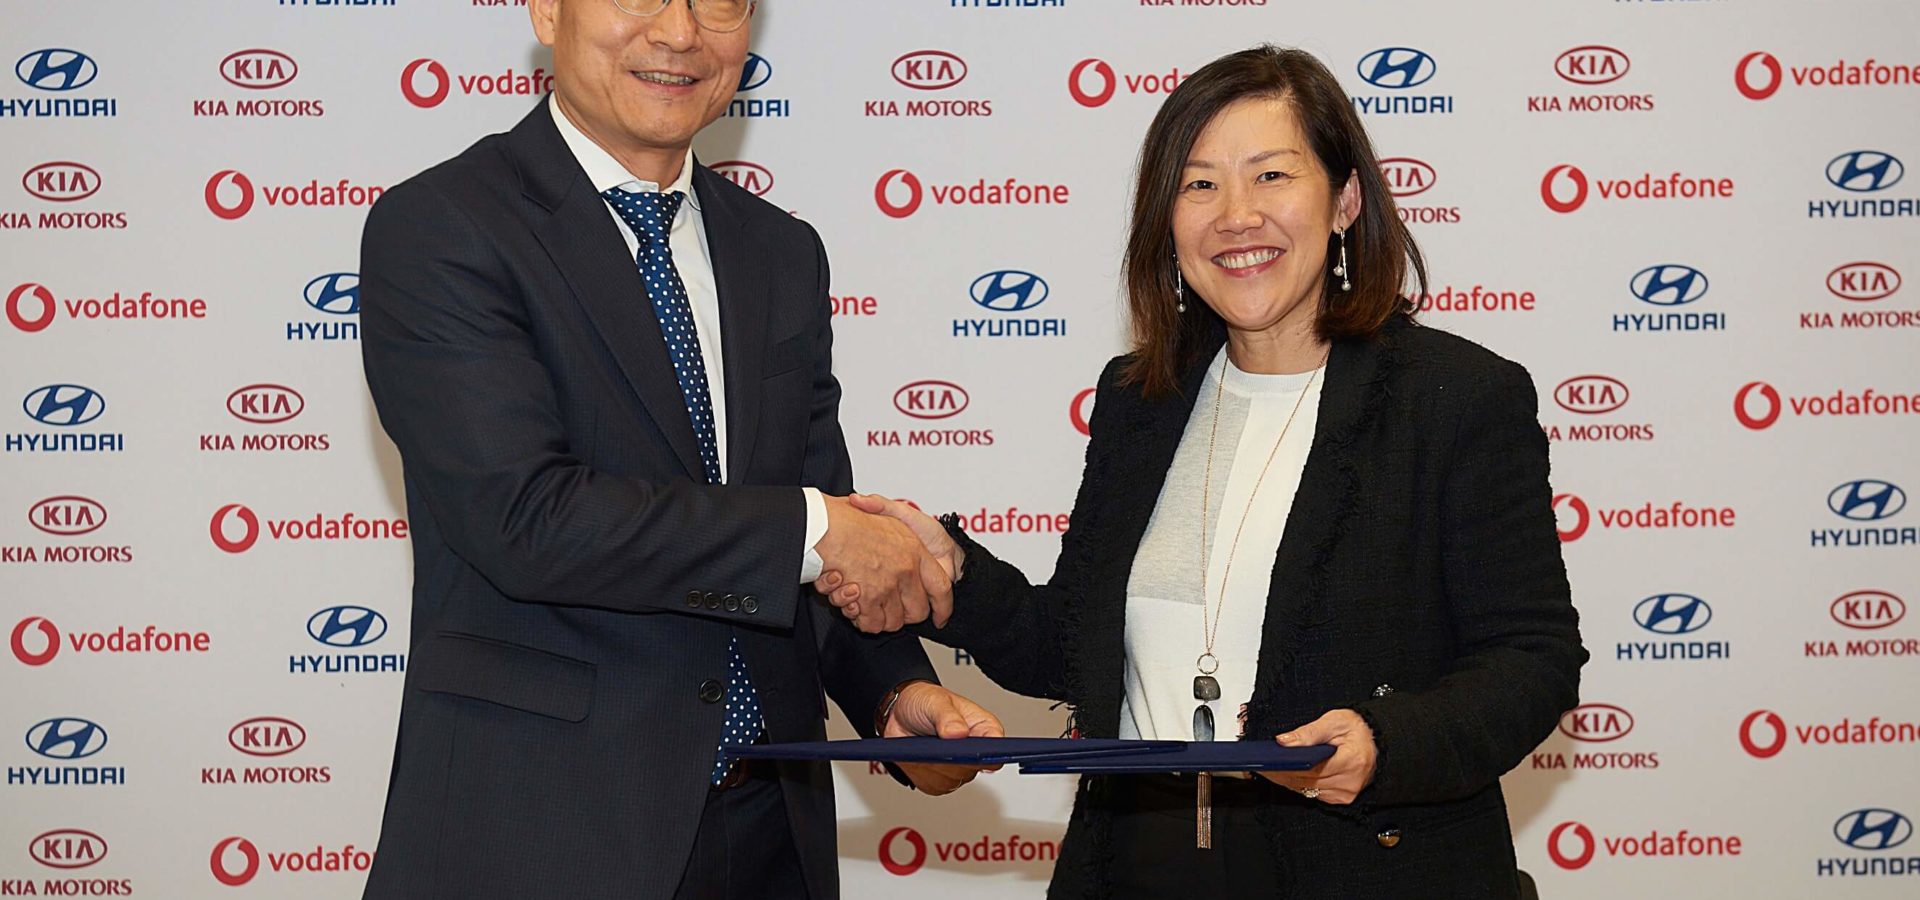 Hyundai und Kia mit Vodafone